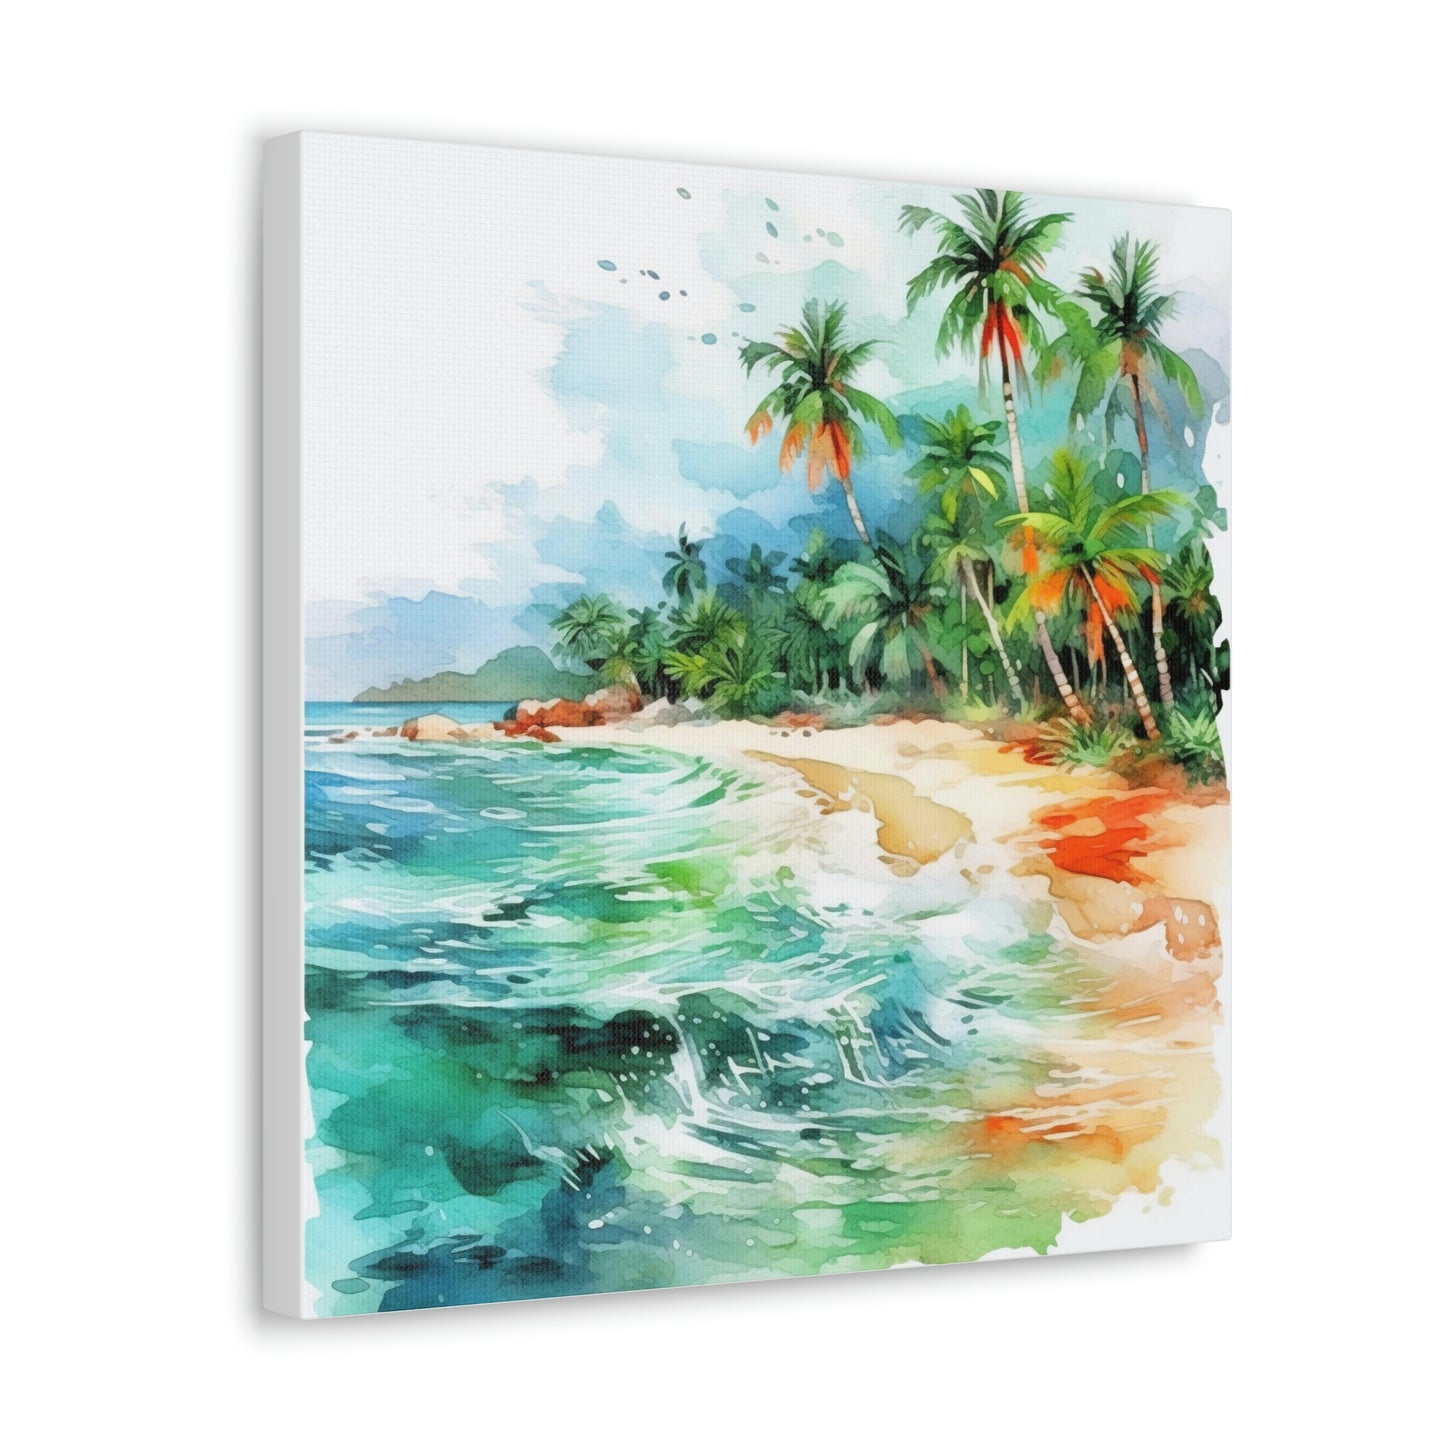 tropical beach canvas art, beach canvas wall decor